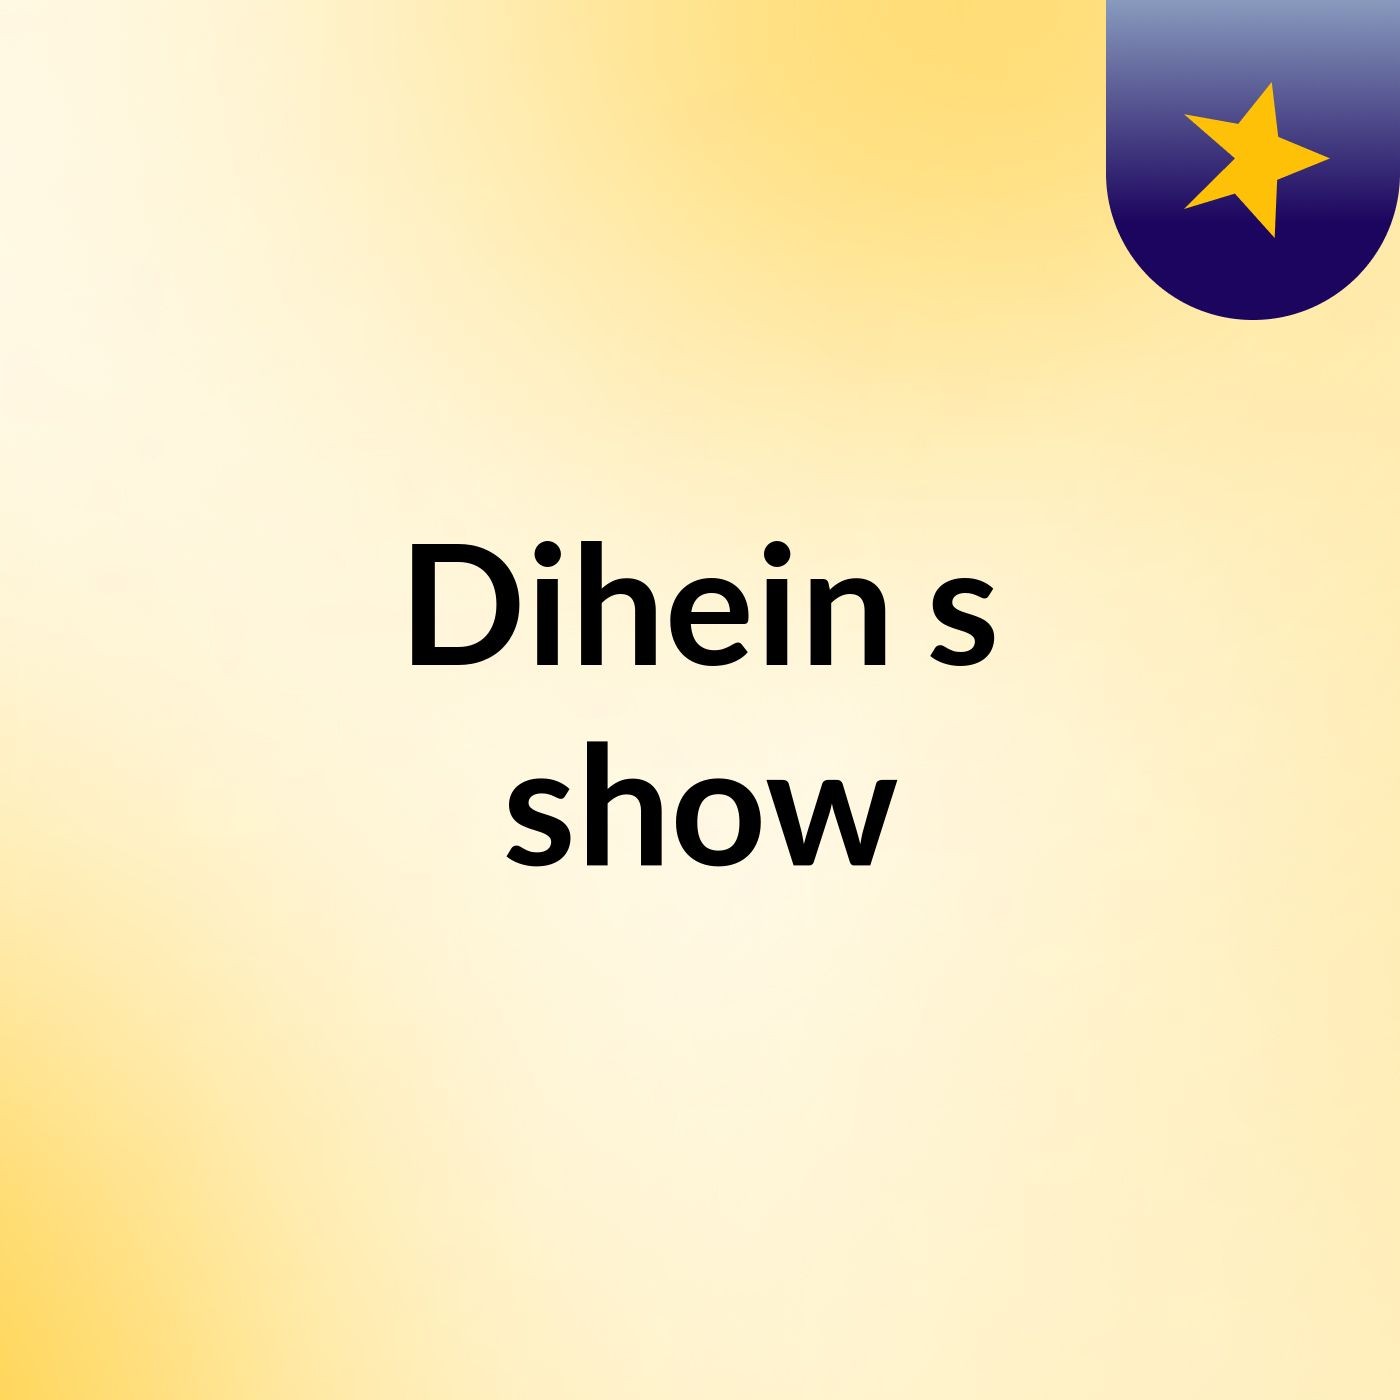 Dihein's show